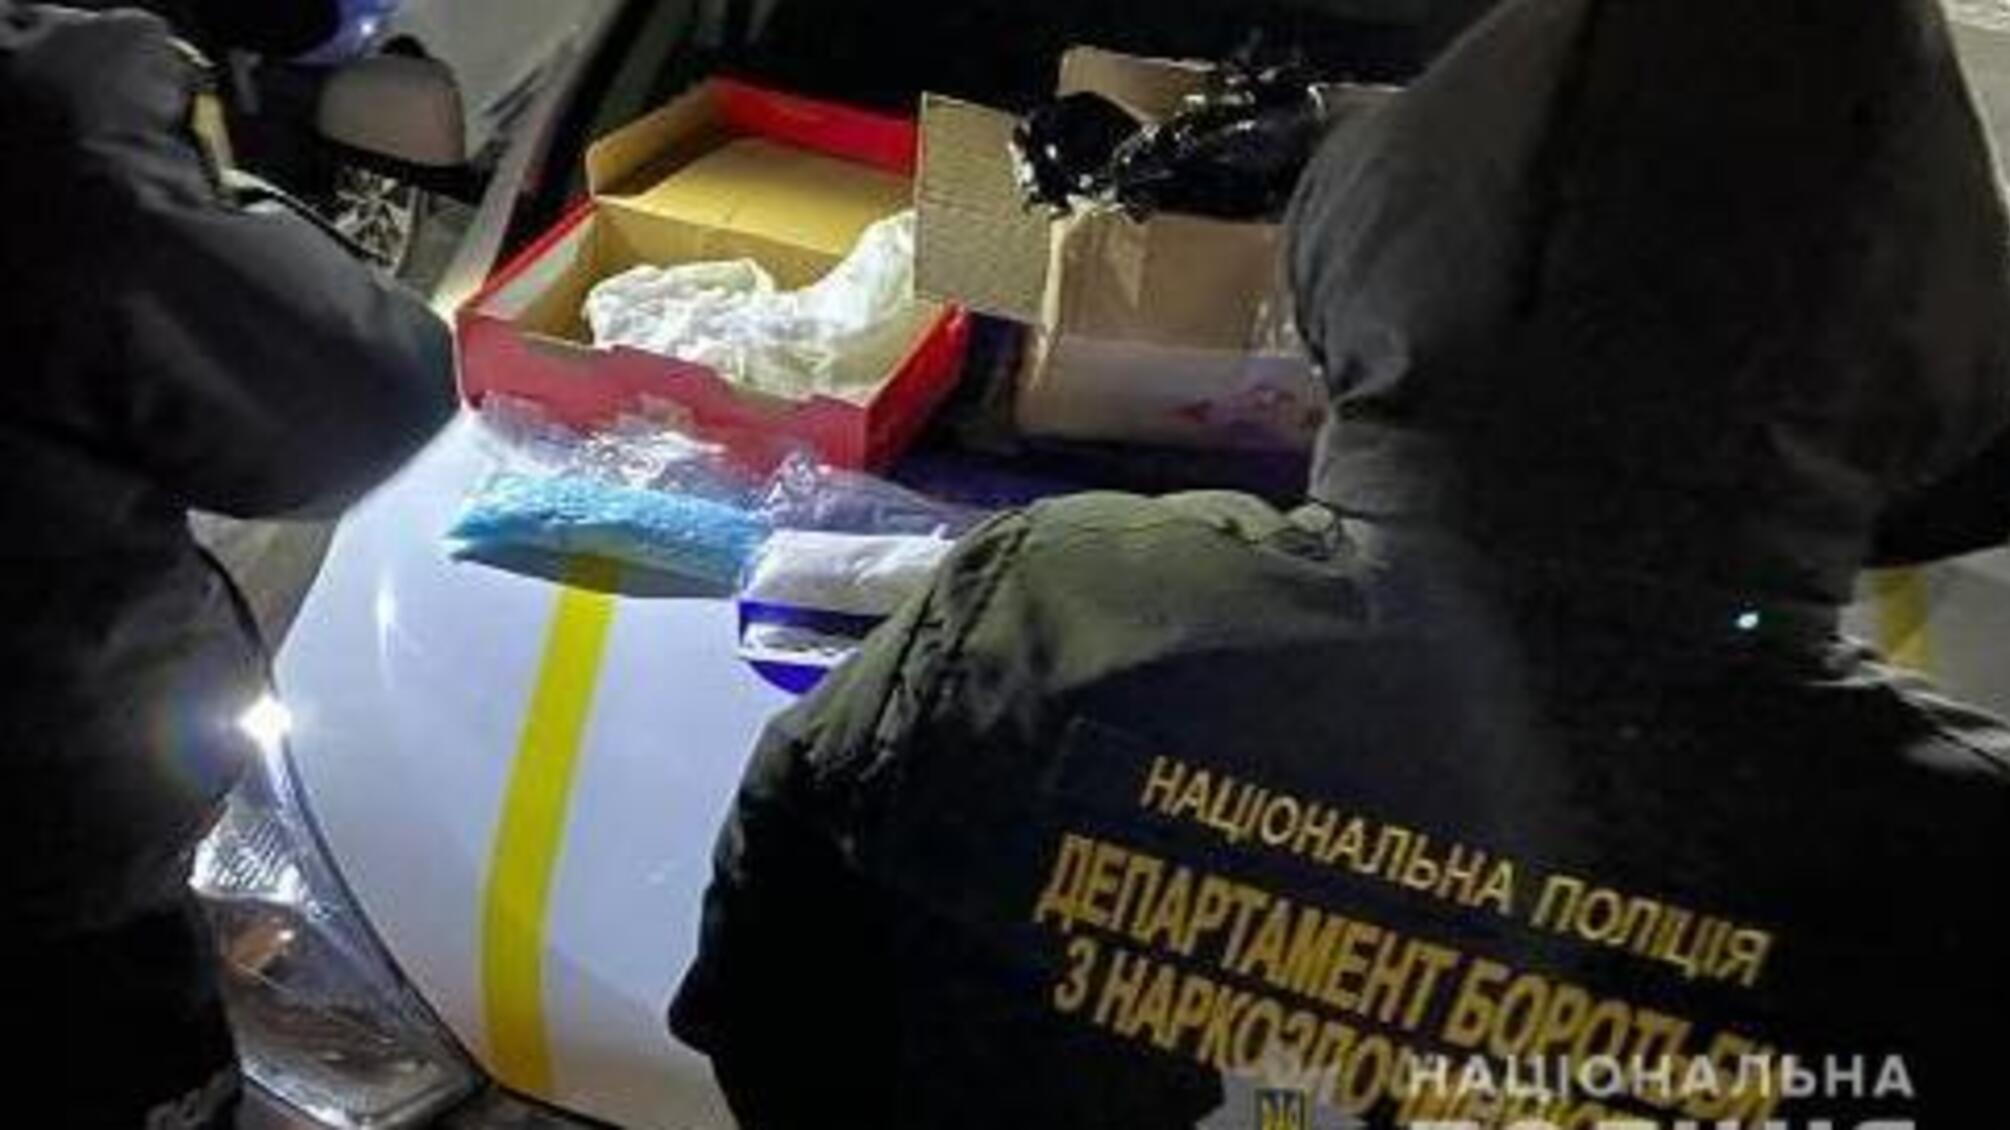 У двох мешканок Запорізької області правоохоронці вилучили наркотиків та психотропів на понад сім мільйонів гривень